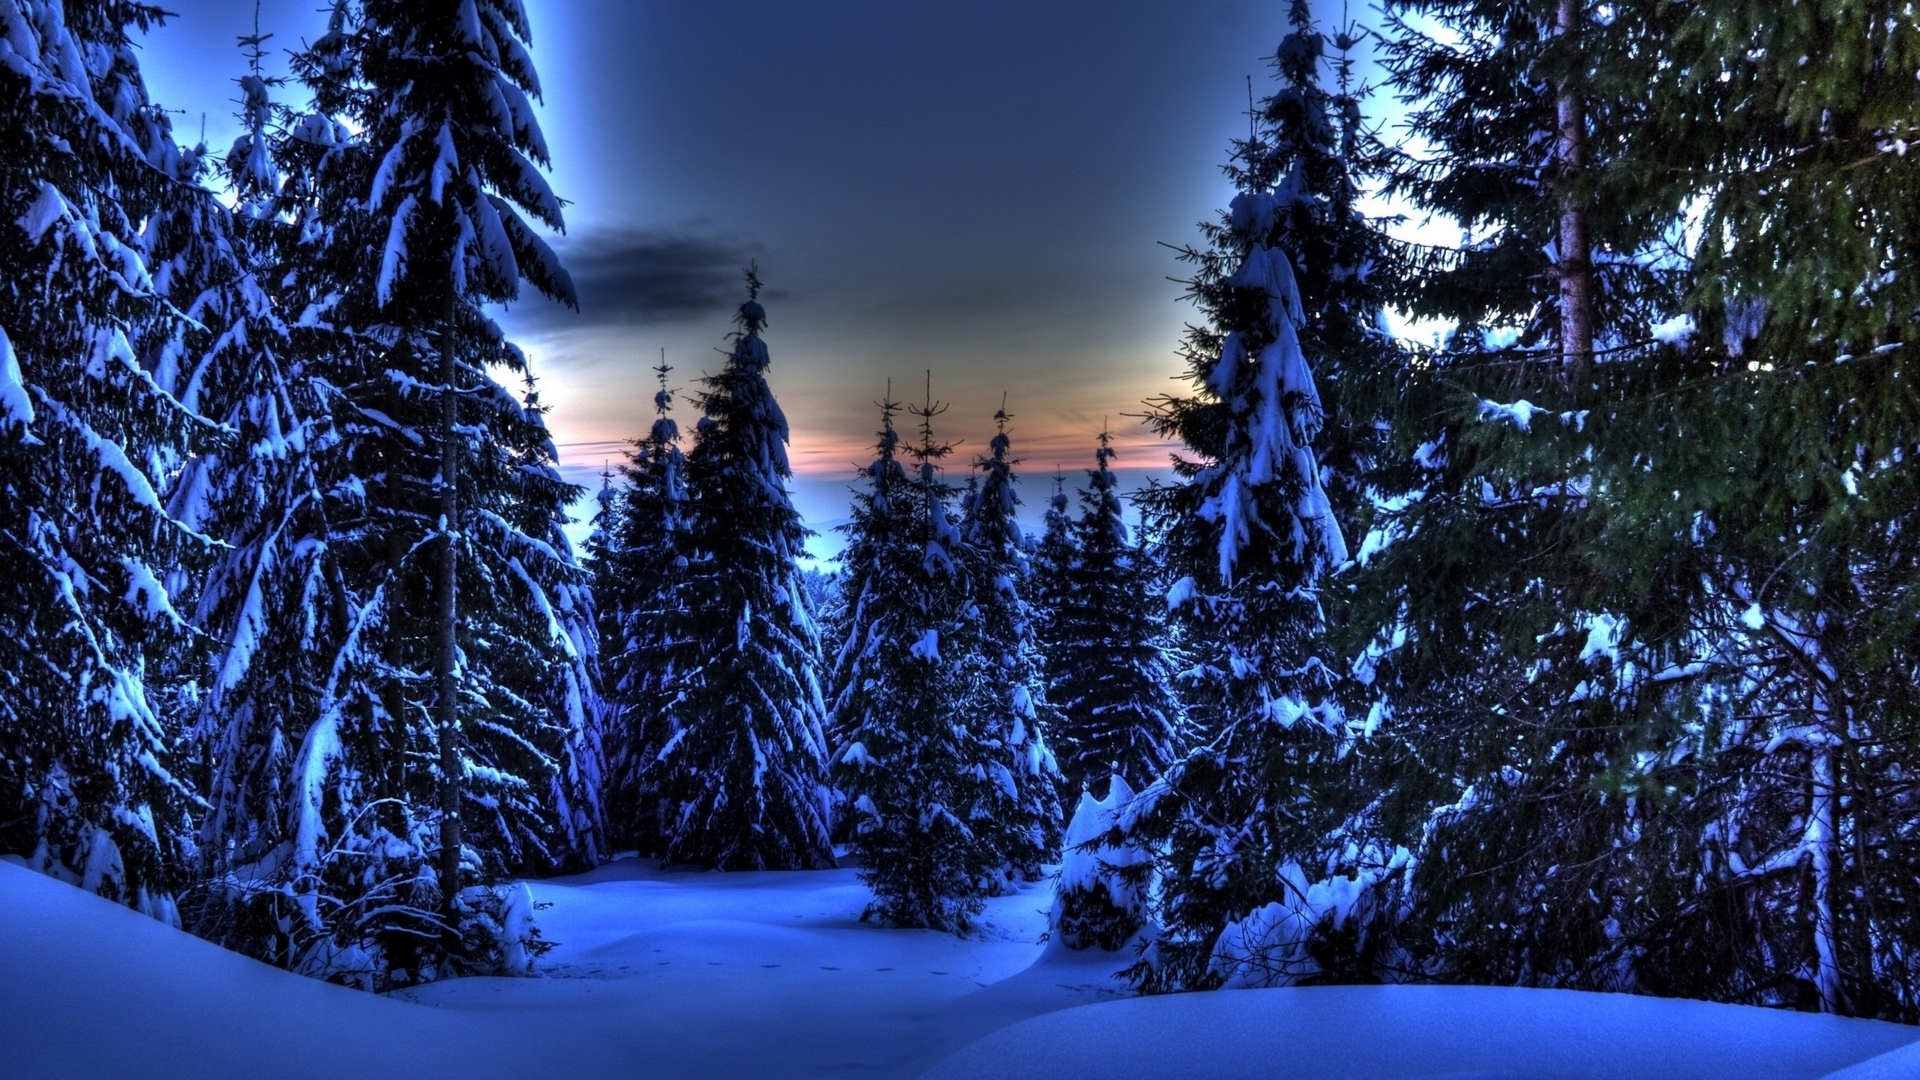 Скачать обои бесплатно Зима, Hdr, Земля/природа картинка на рабочий стол ПК